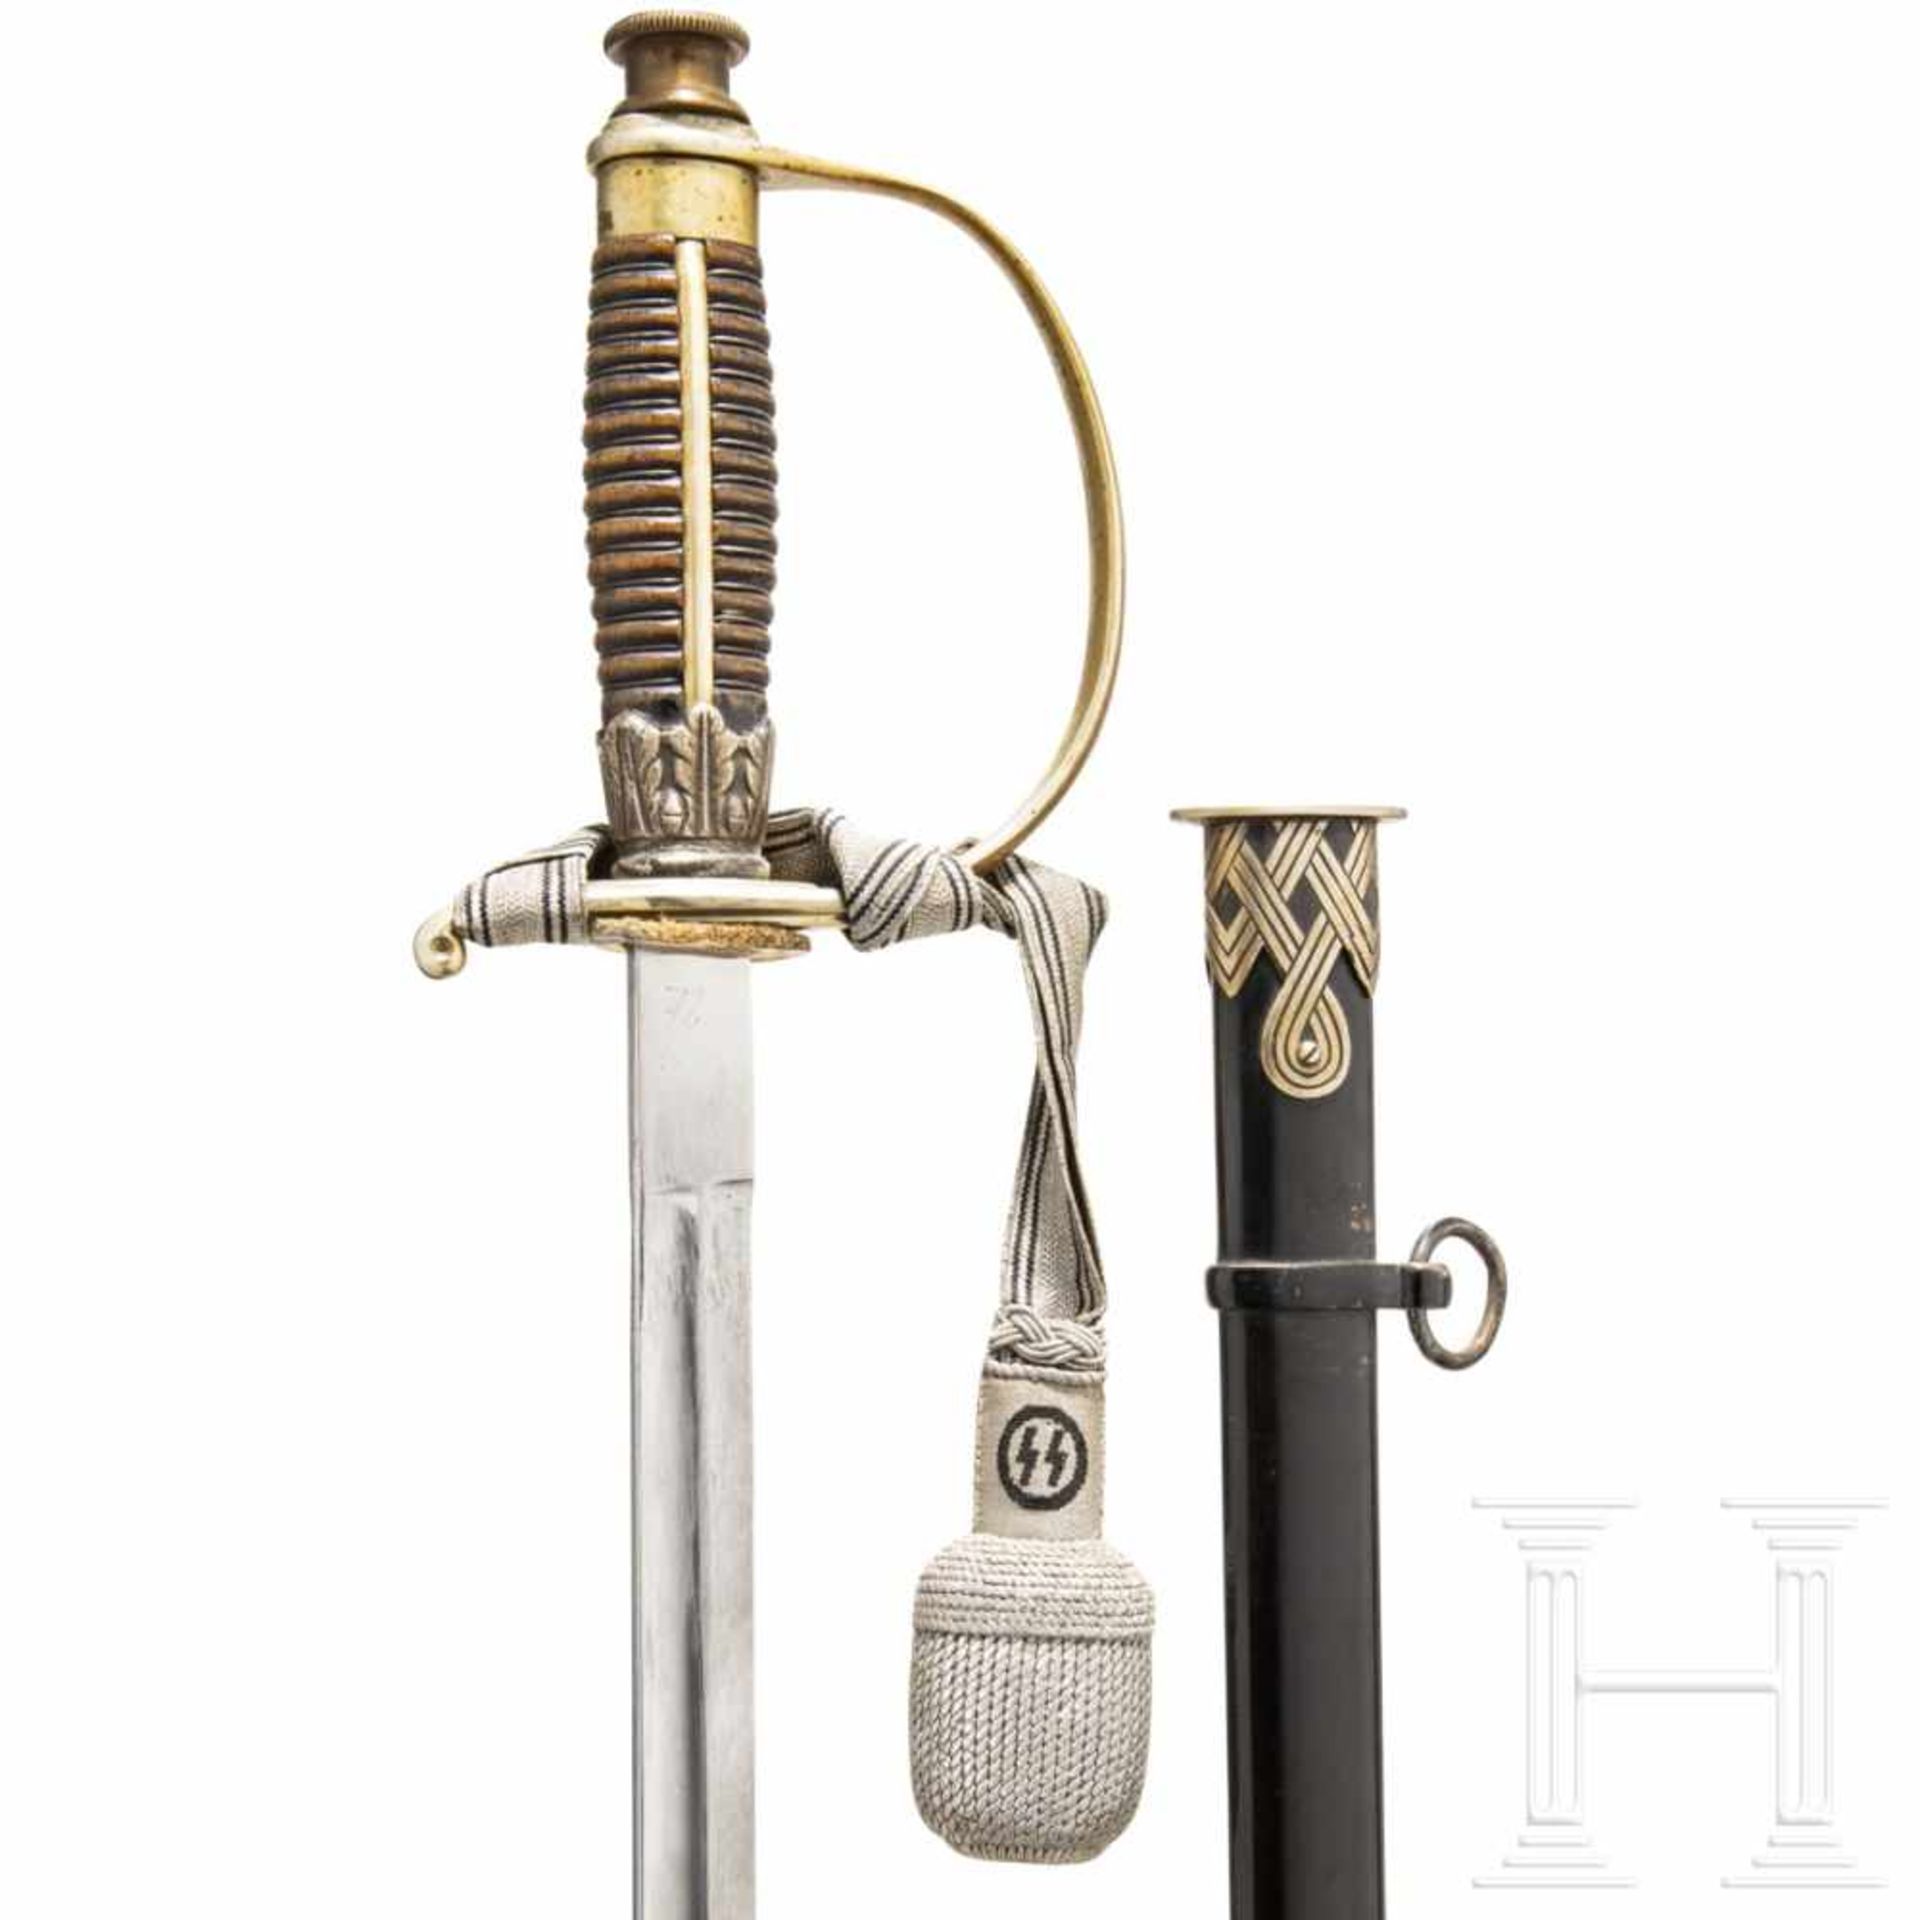 An SS officer's sword/dagger M 36Klinge ohne Herstellerbezeichnung, am Übergang zur Fehlschärfe - Bild 3 aus 4